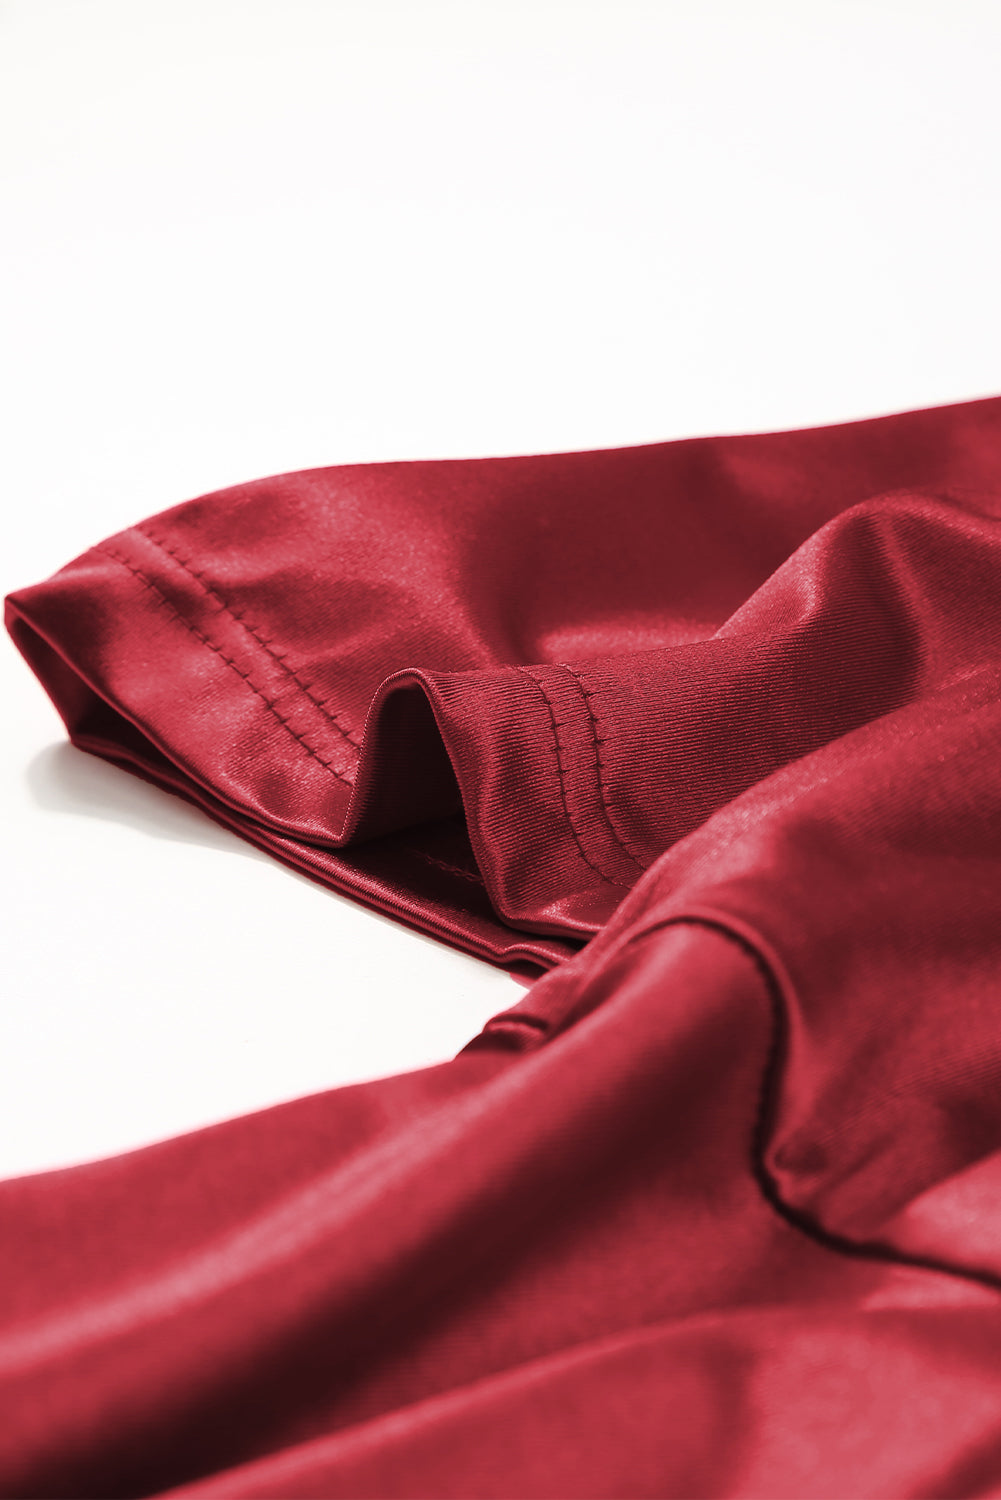 Vatreno crvena midi haljina s naborima i puf rukavima veće veličine